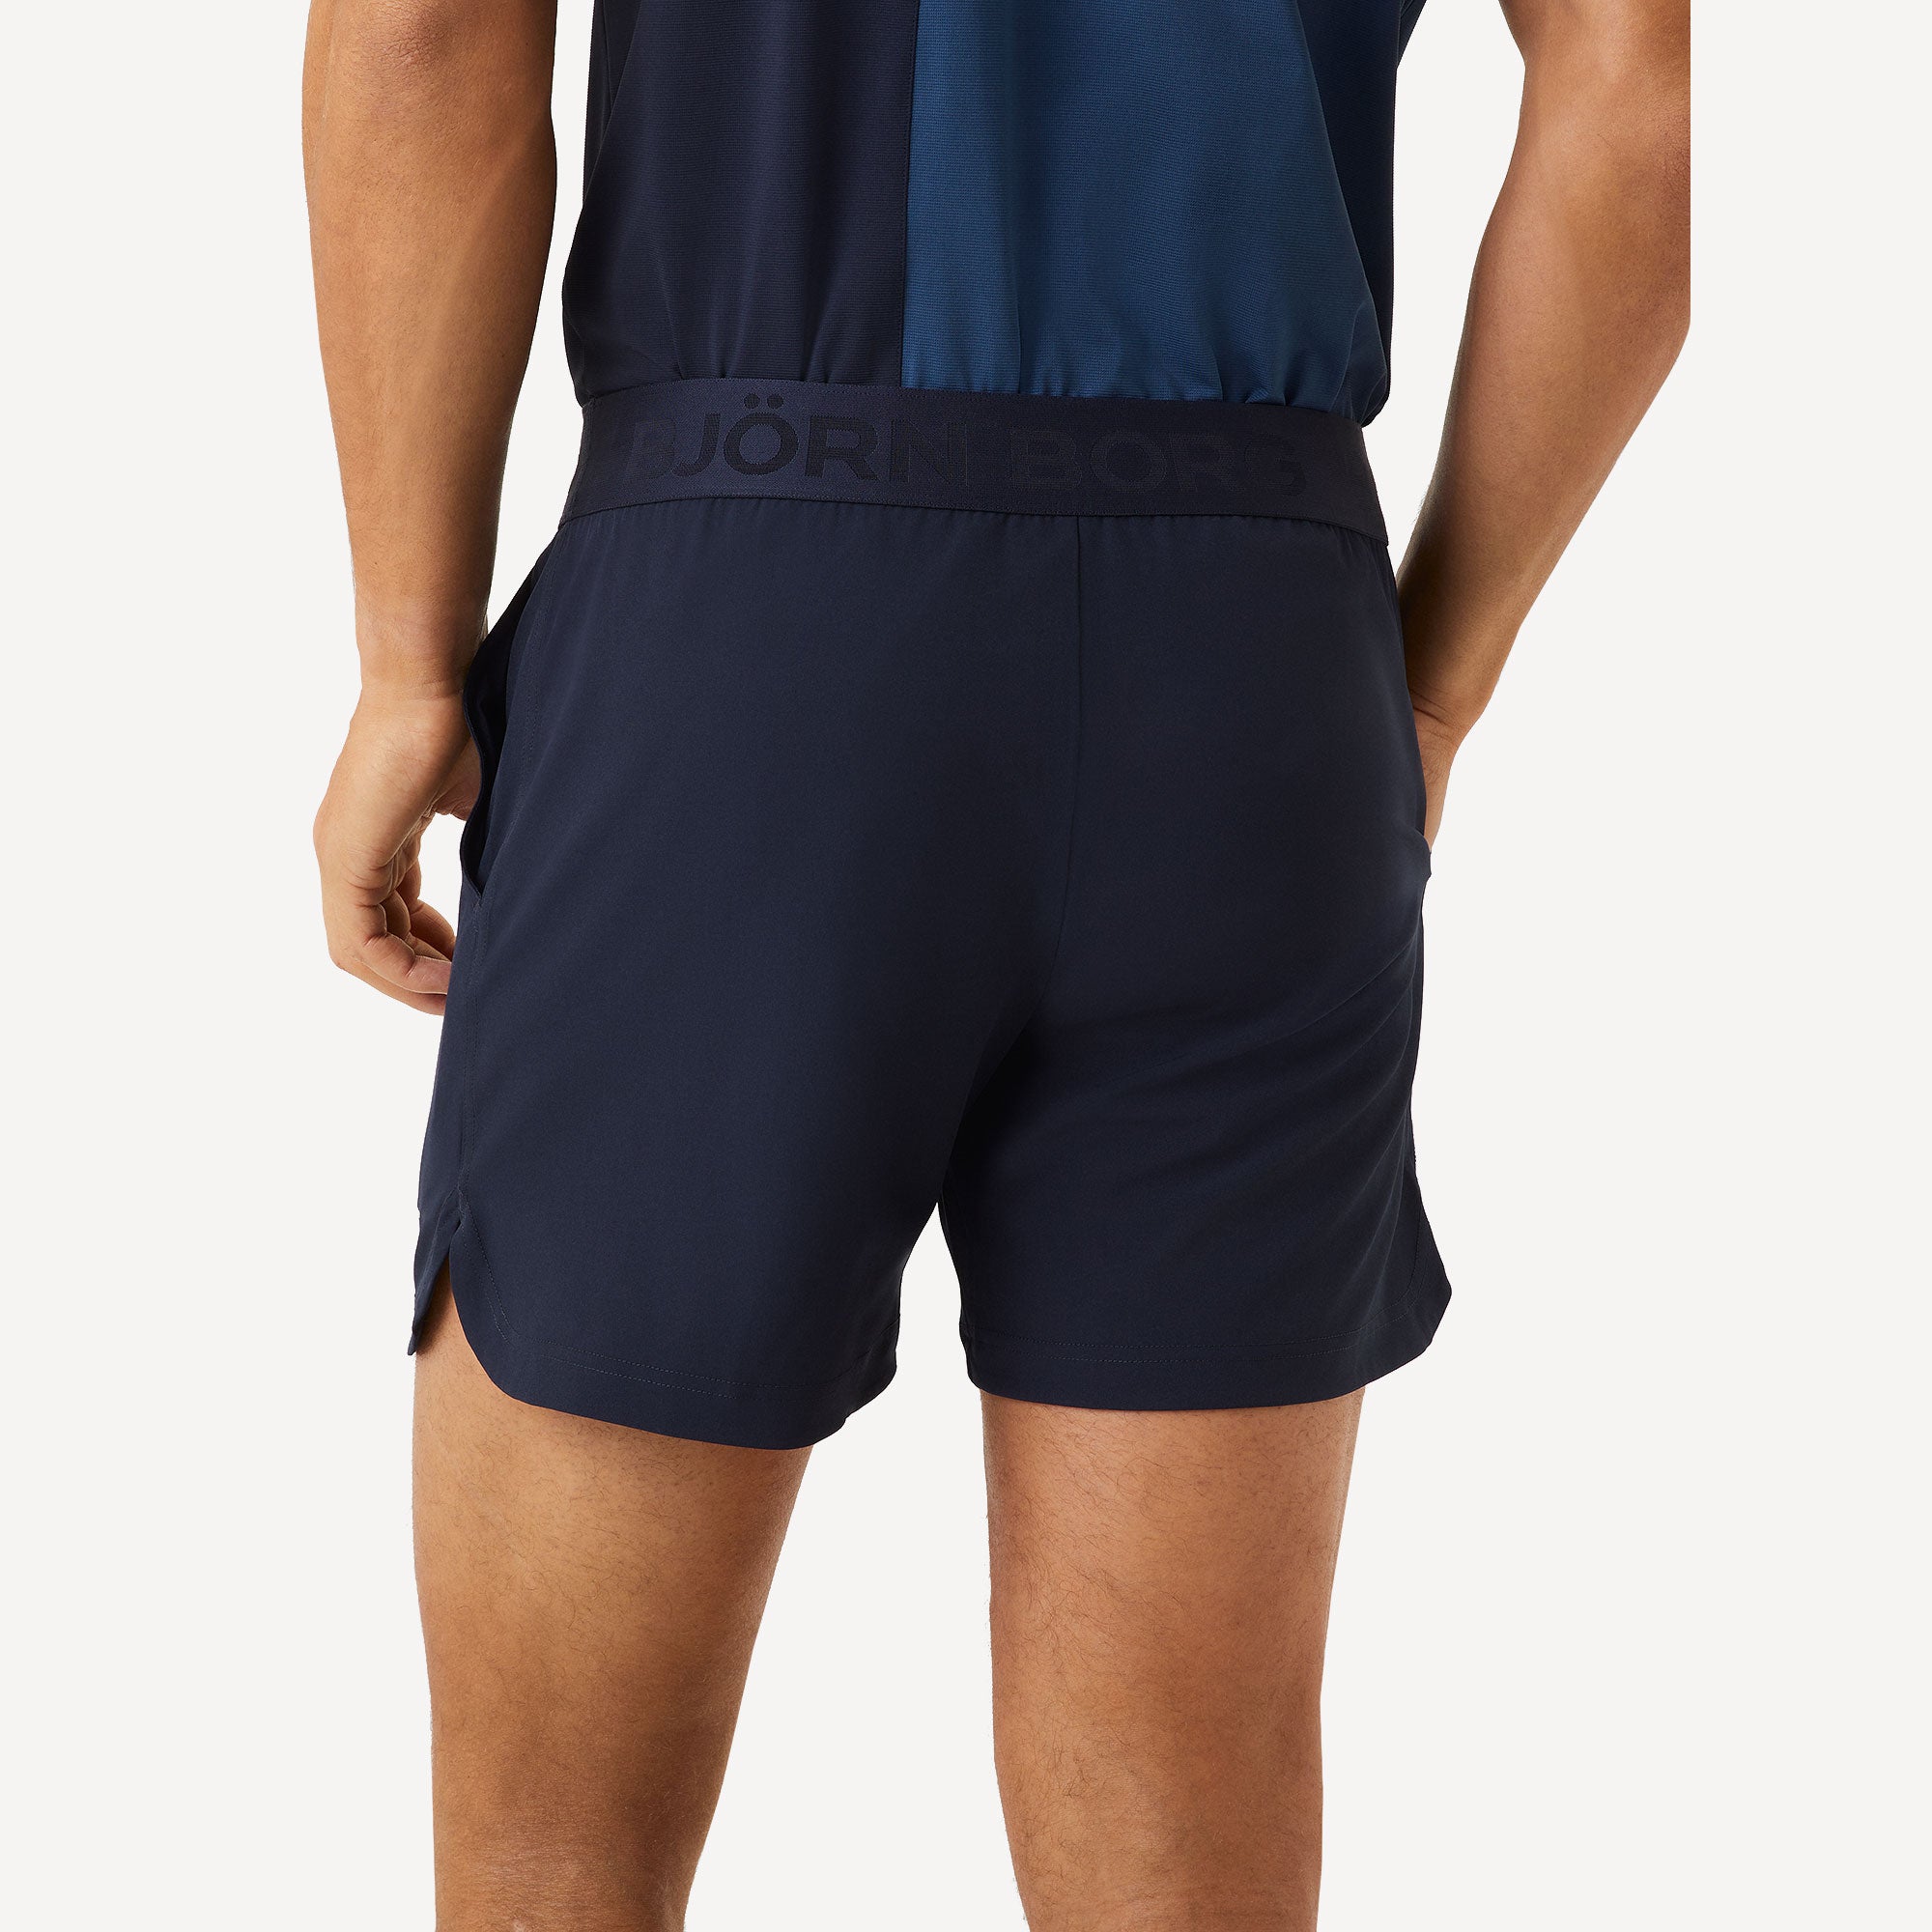 Björn Borg Ace Men's Short Tennis Shorts - Dark Blue (2)